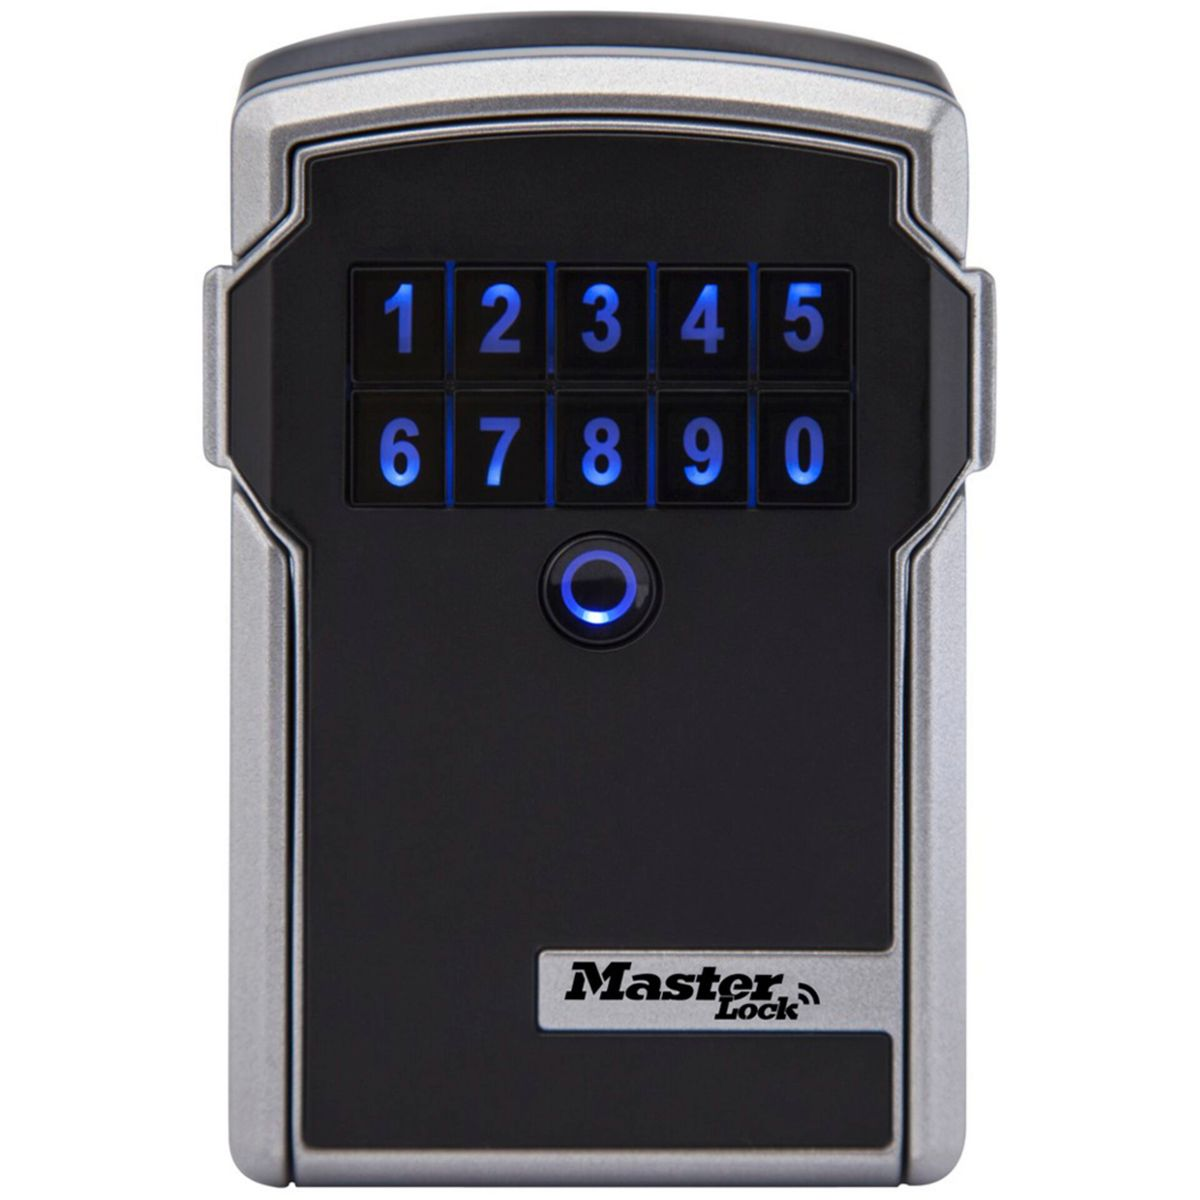 Schlüsselkasten Schlüsseltresor grau MASTERLOCK Lock grau schwarz 5441EURD / schwarz Master Bluetooth